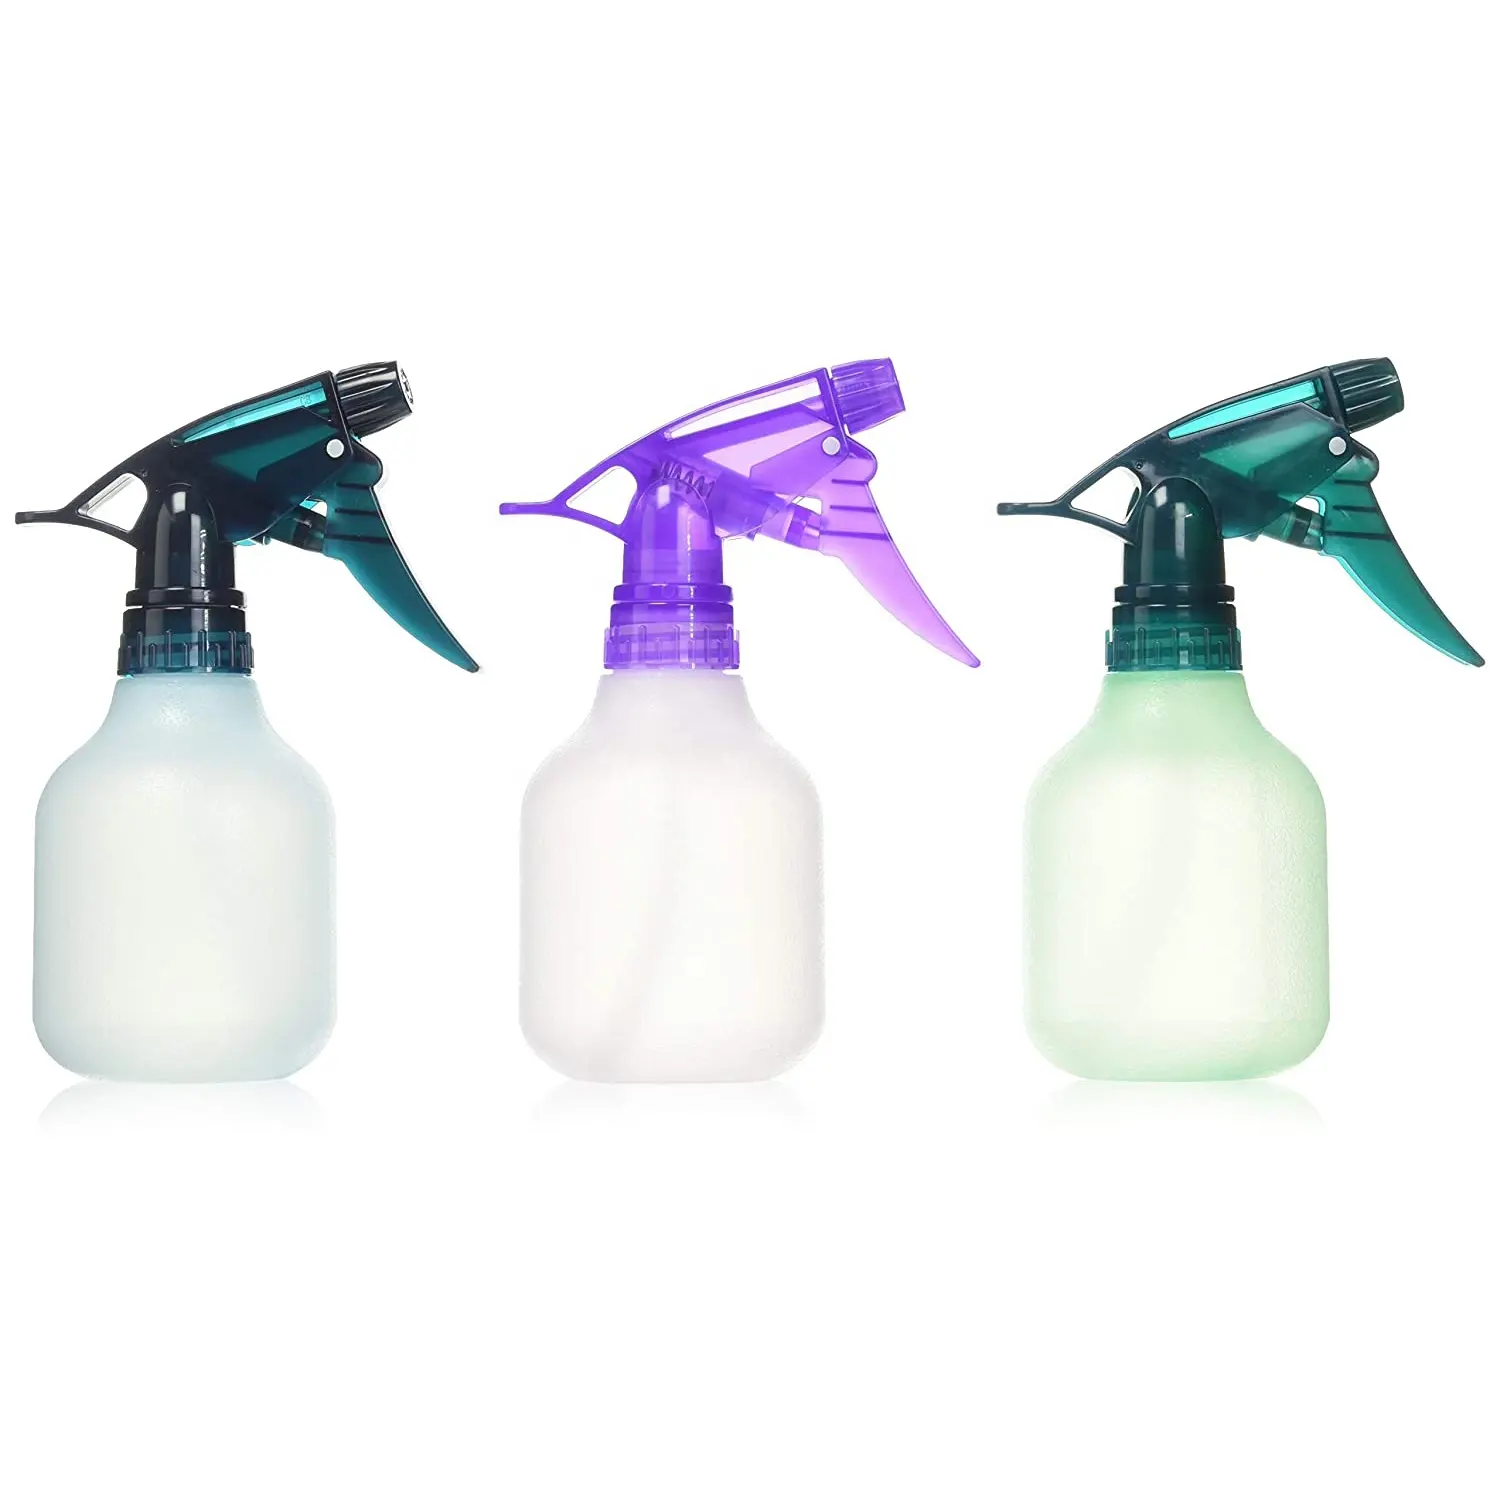 8 oz. Buzlu çeşitli renkler ince sis püskürtücü tetik fışkırtma şişe bahçe sulama tesisleri plastik boş sprey şişesi